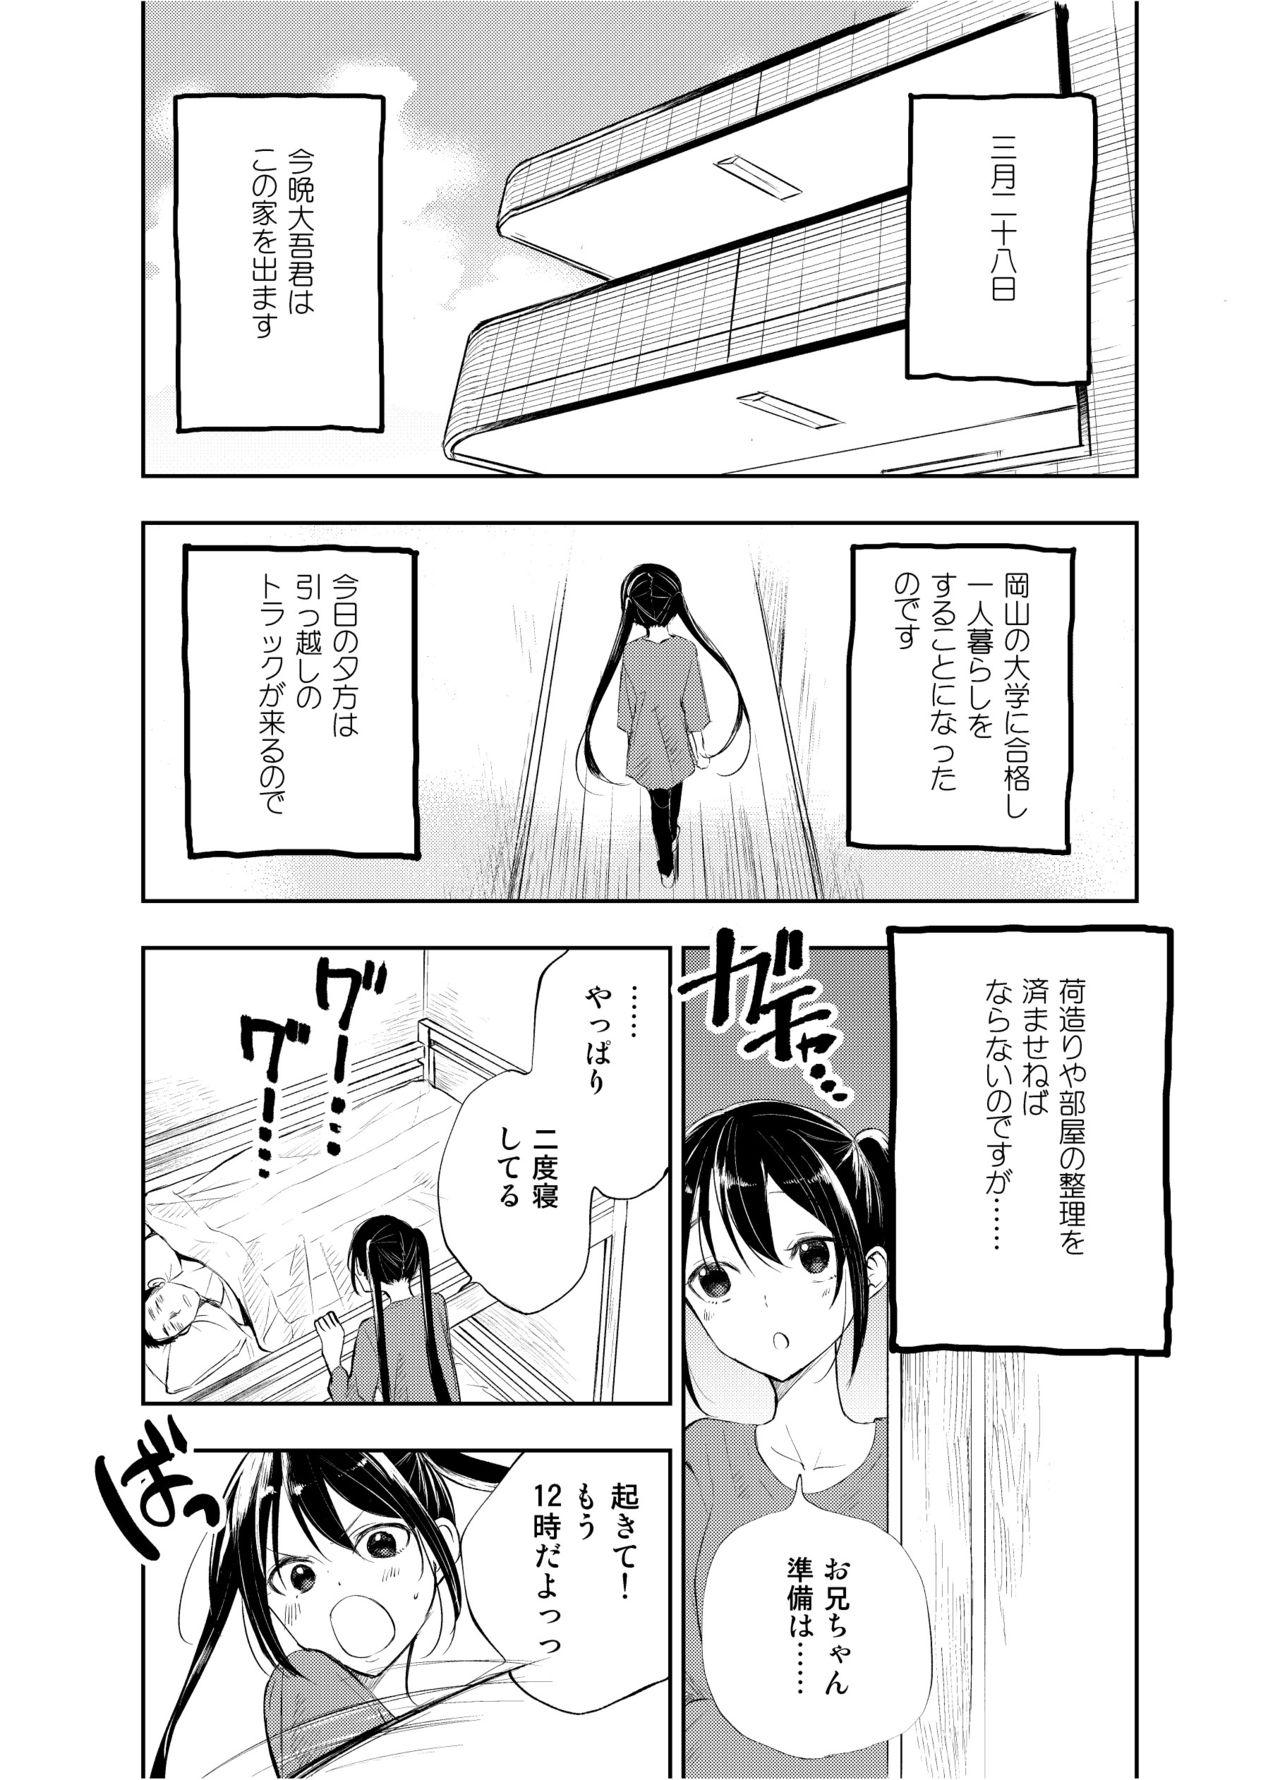 Husband Onii-chan tte Hontou Ona Saru! 2 Assfuck - Page 2